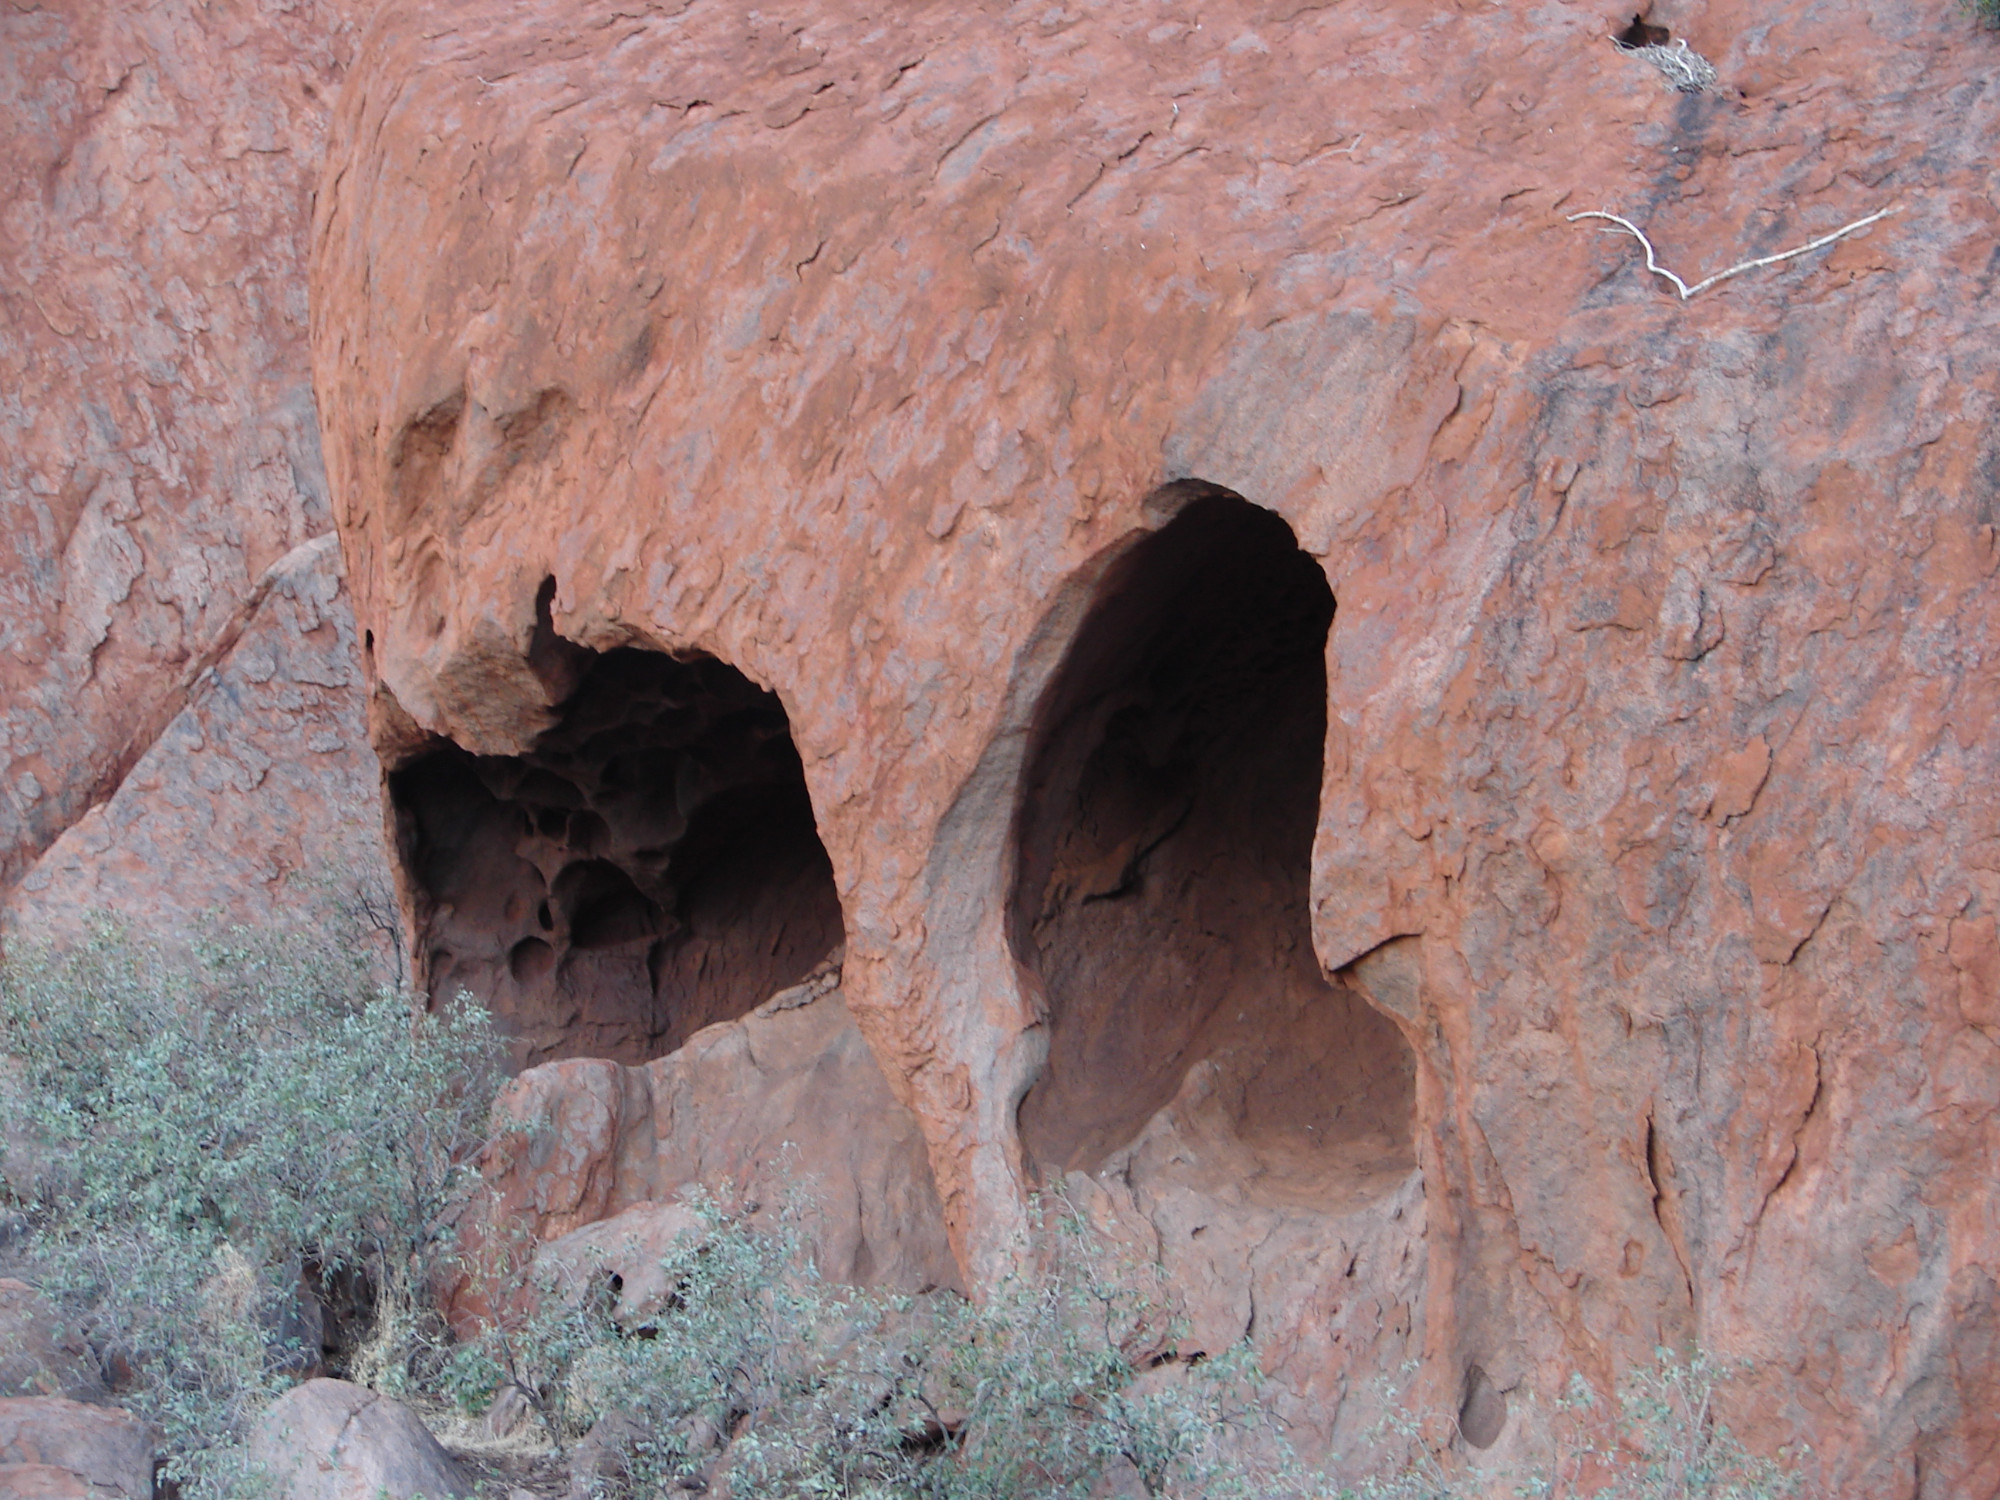 Erosion holes